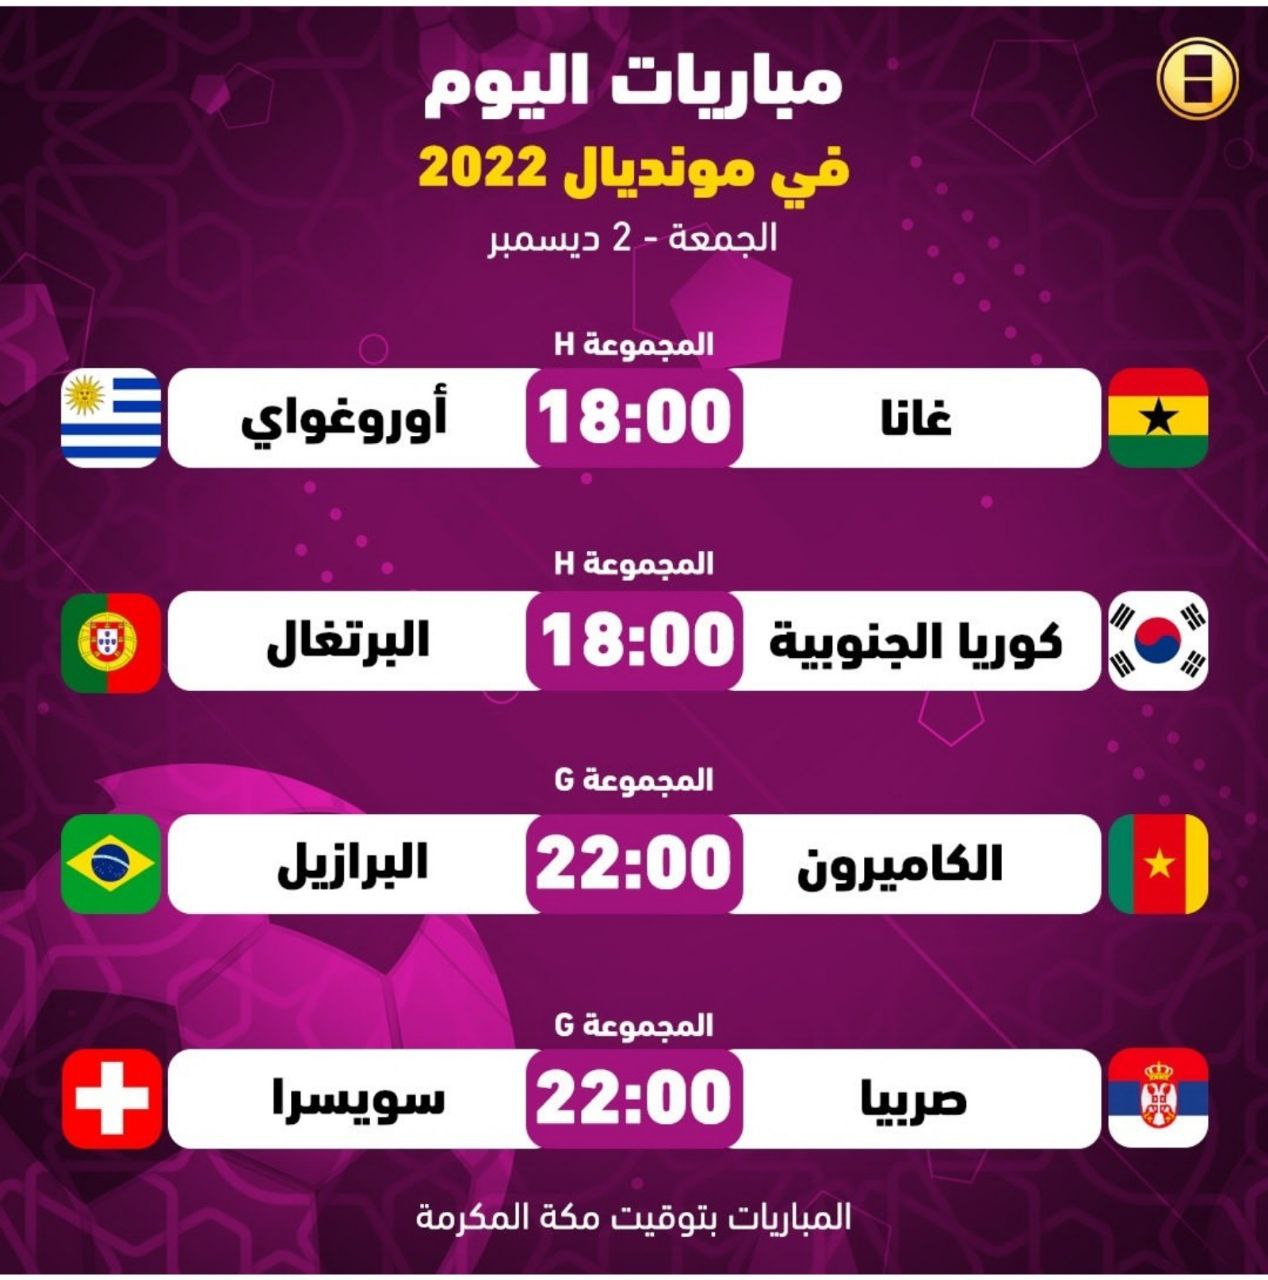 كأس العالم أربع مباريات تقام اليوم الجمعة تحمل الإثارة والمتعة ضمن المجموعة السابعة والثامنة جدول المباريات